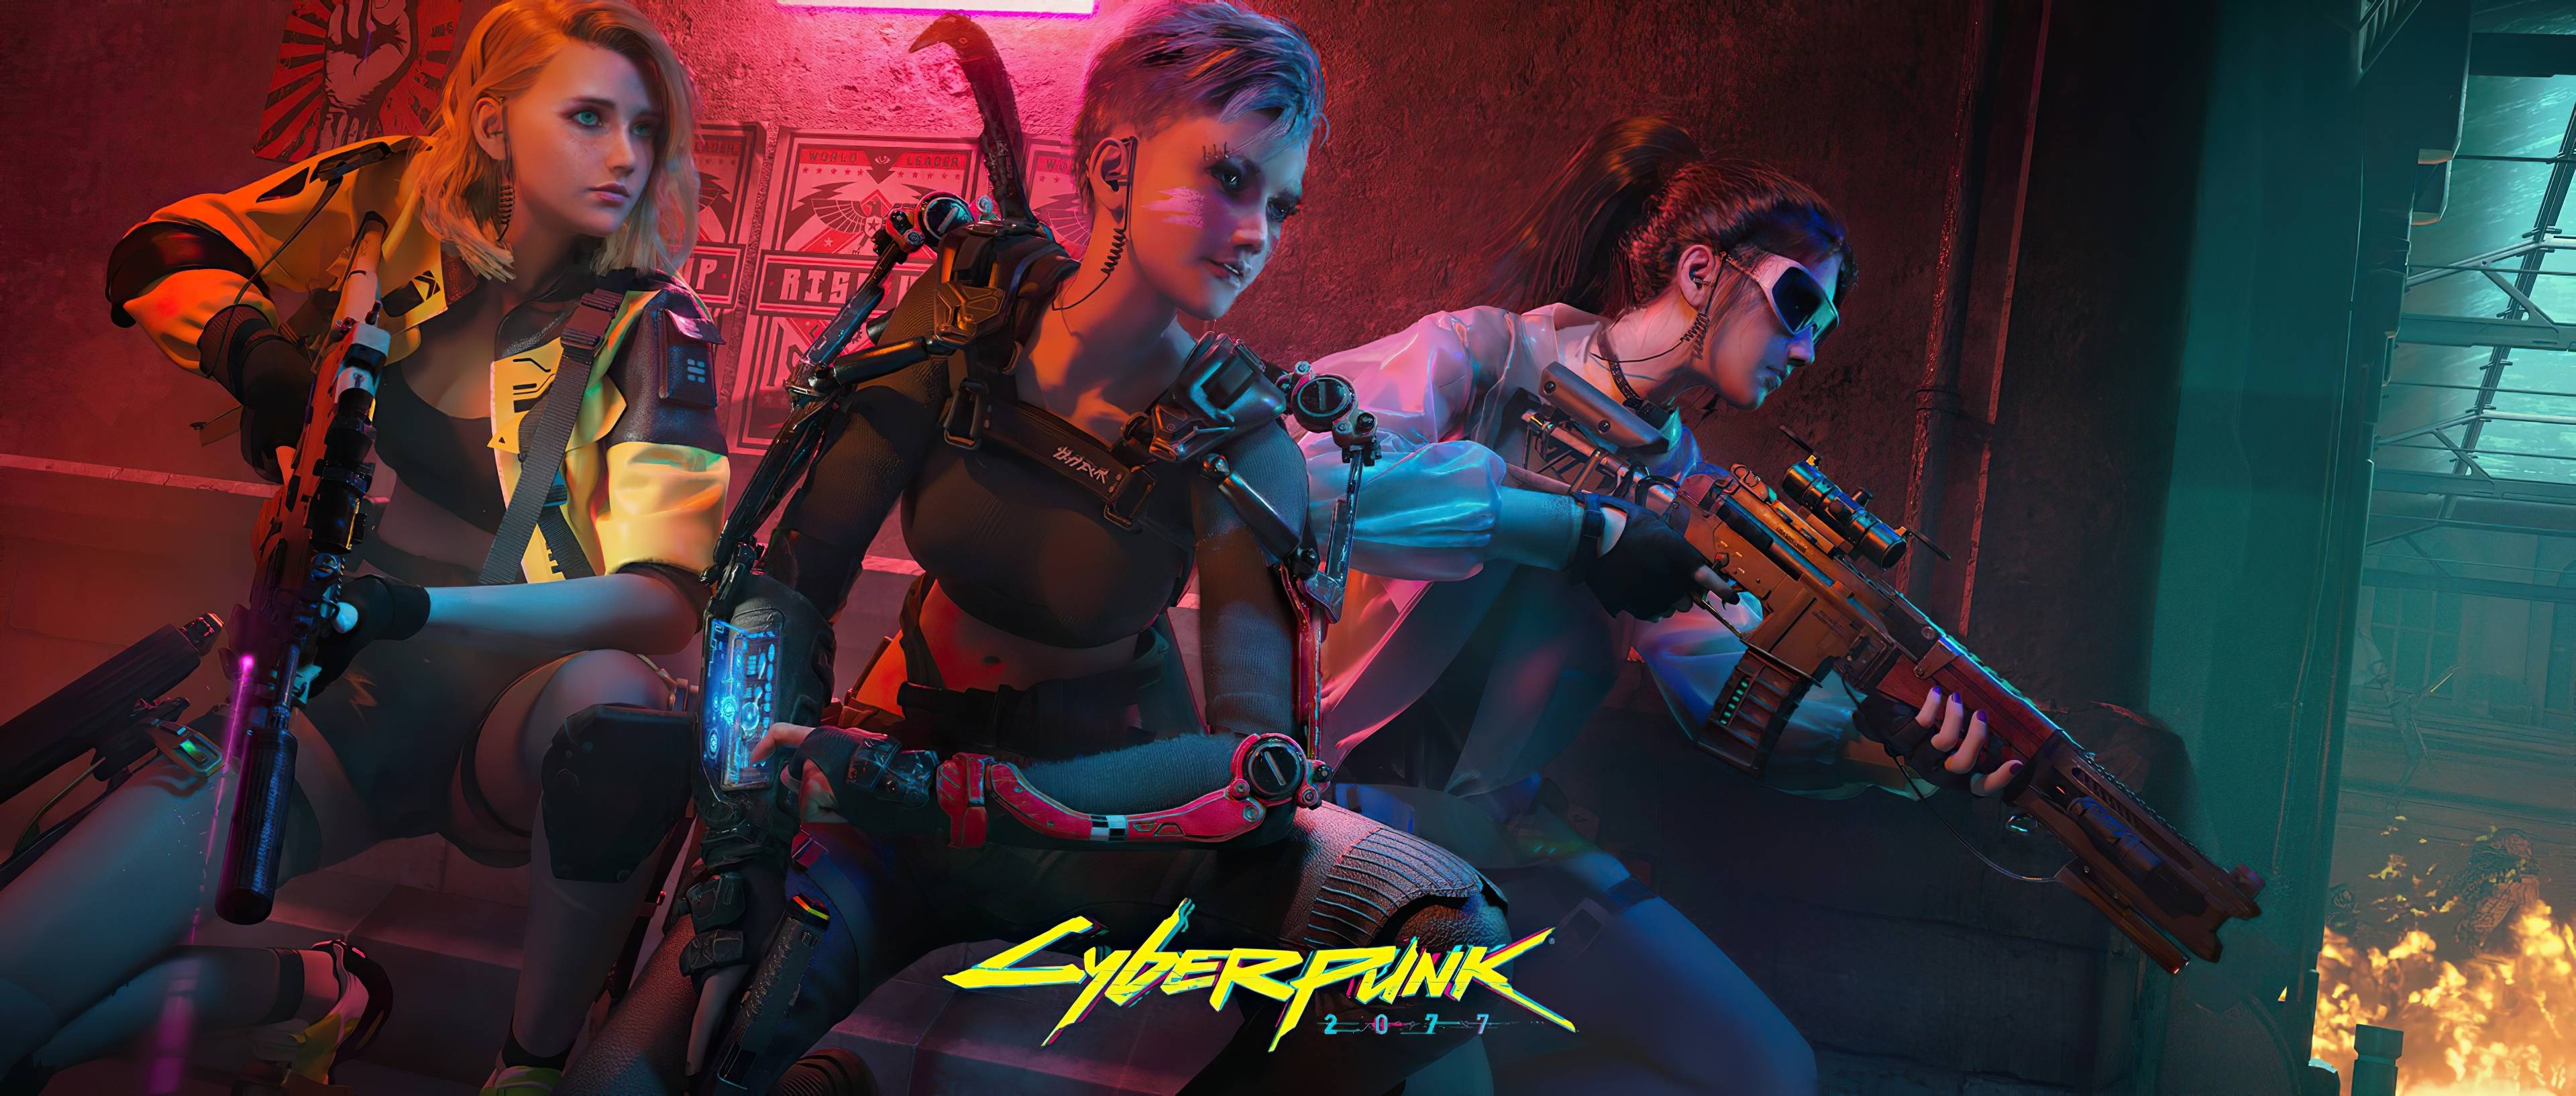 Cyberpunk 2077 Girl Wallpapers Top Free Cyberpunk 2077 Girl Backgrounds Wallpaperaccess